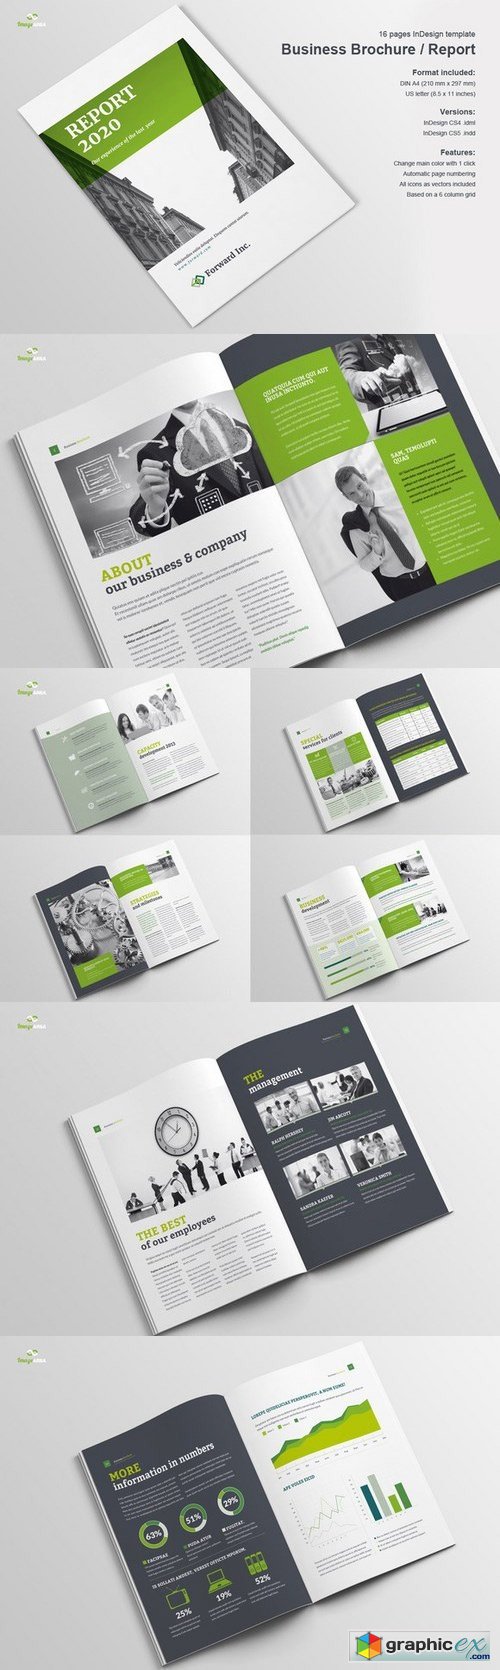 Business Brochure / Report 